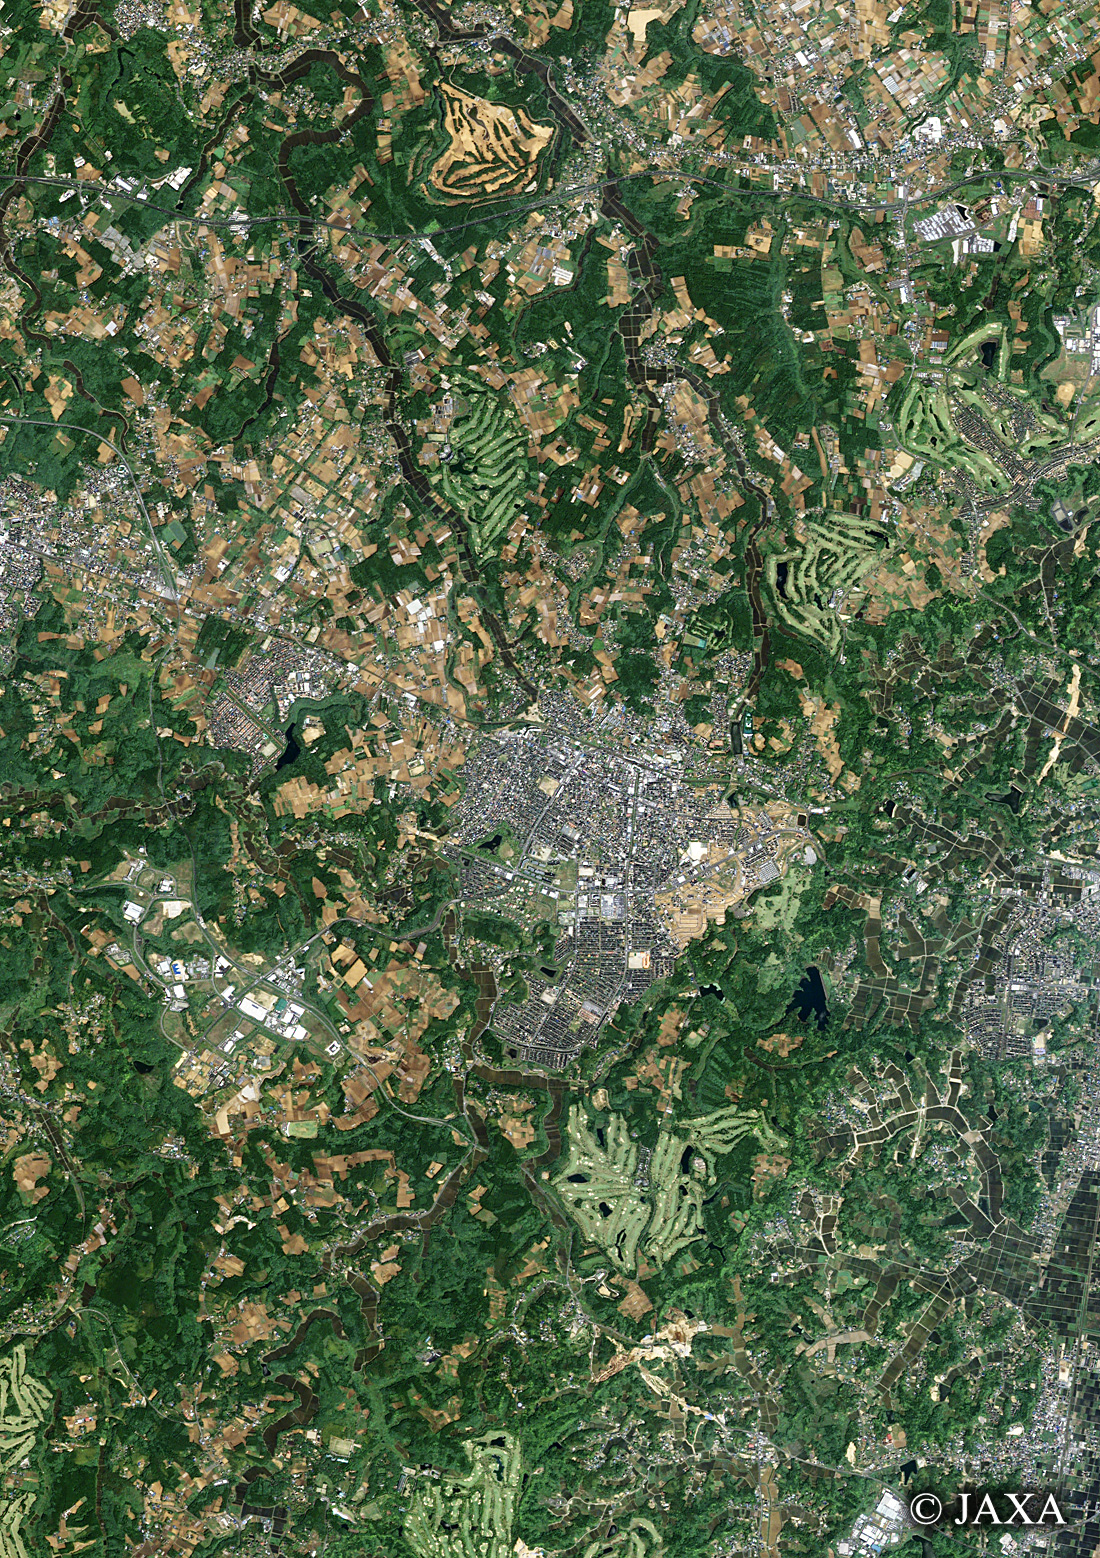 だいちから見た日本の都市 千葉市緑区土気町:衛星画像